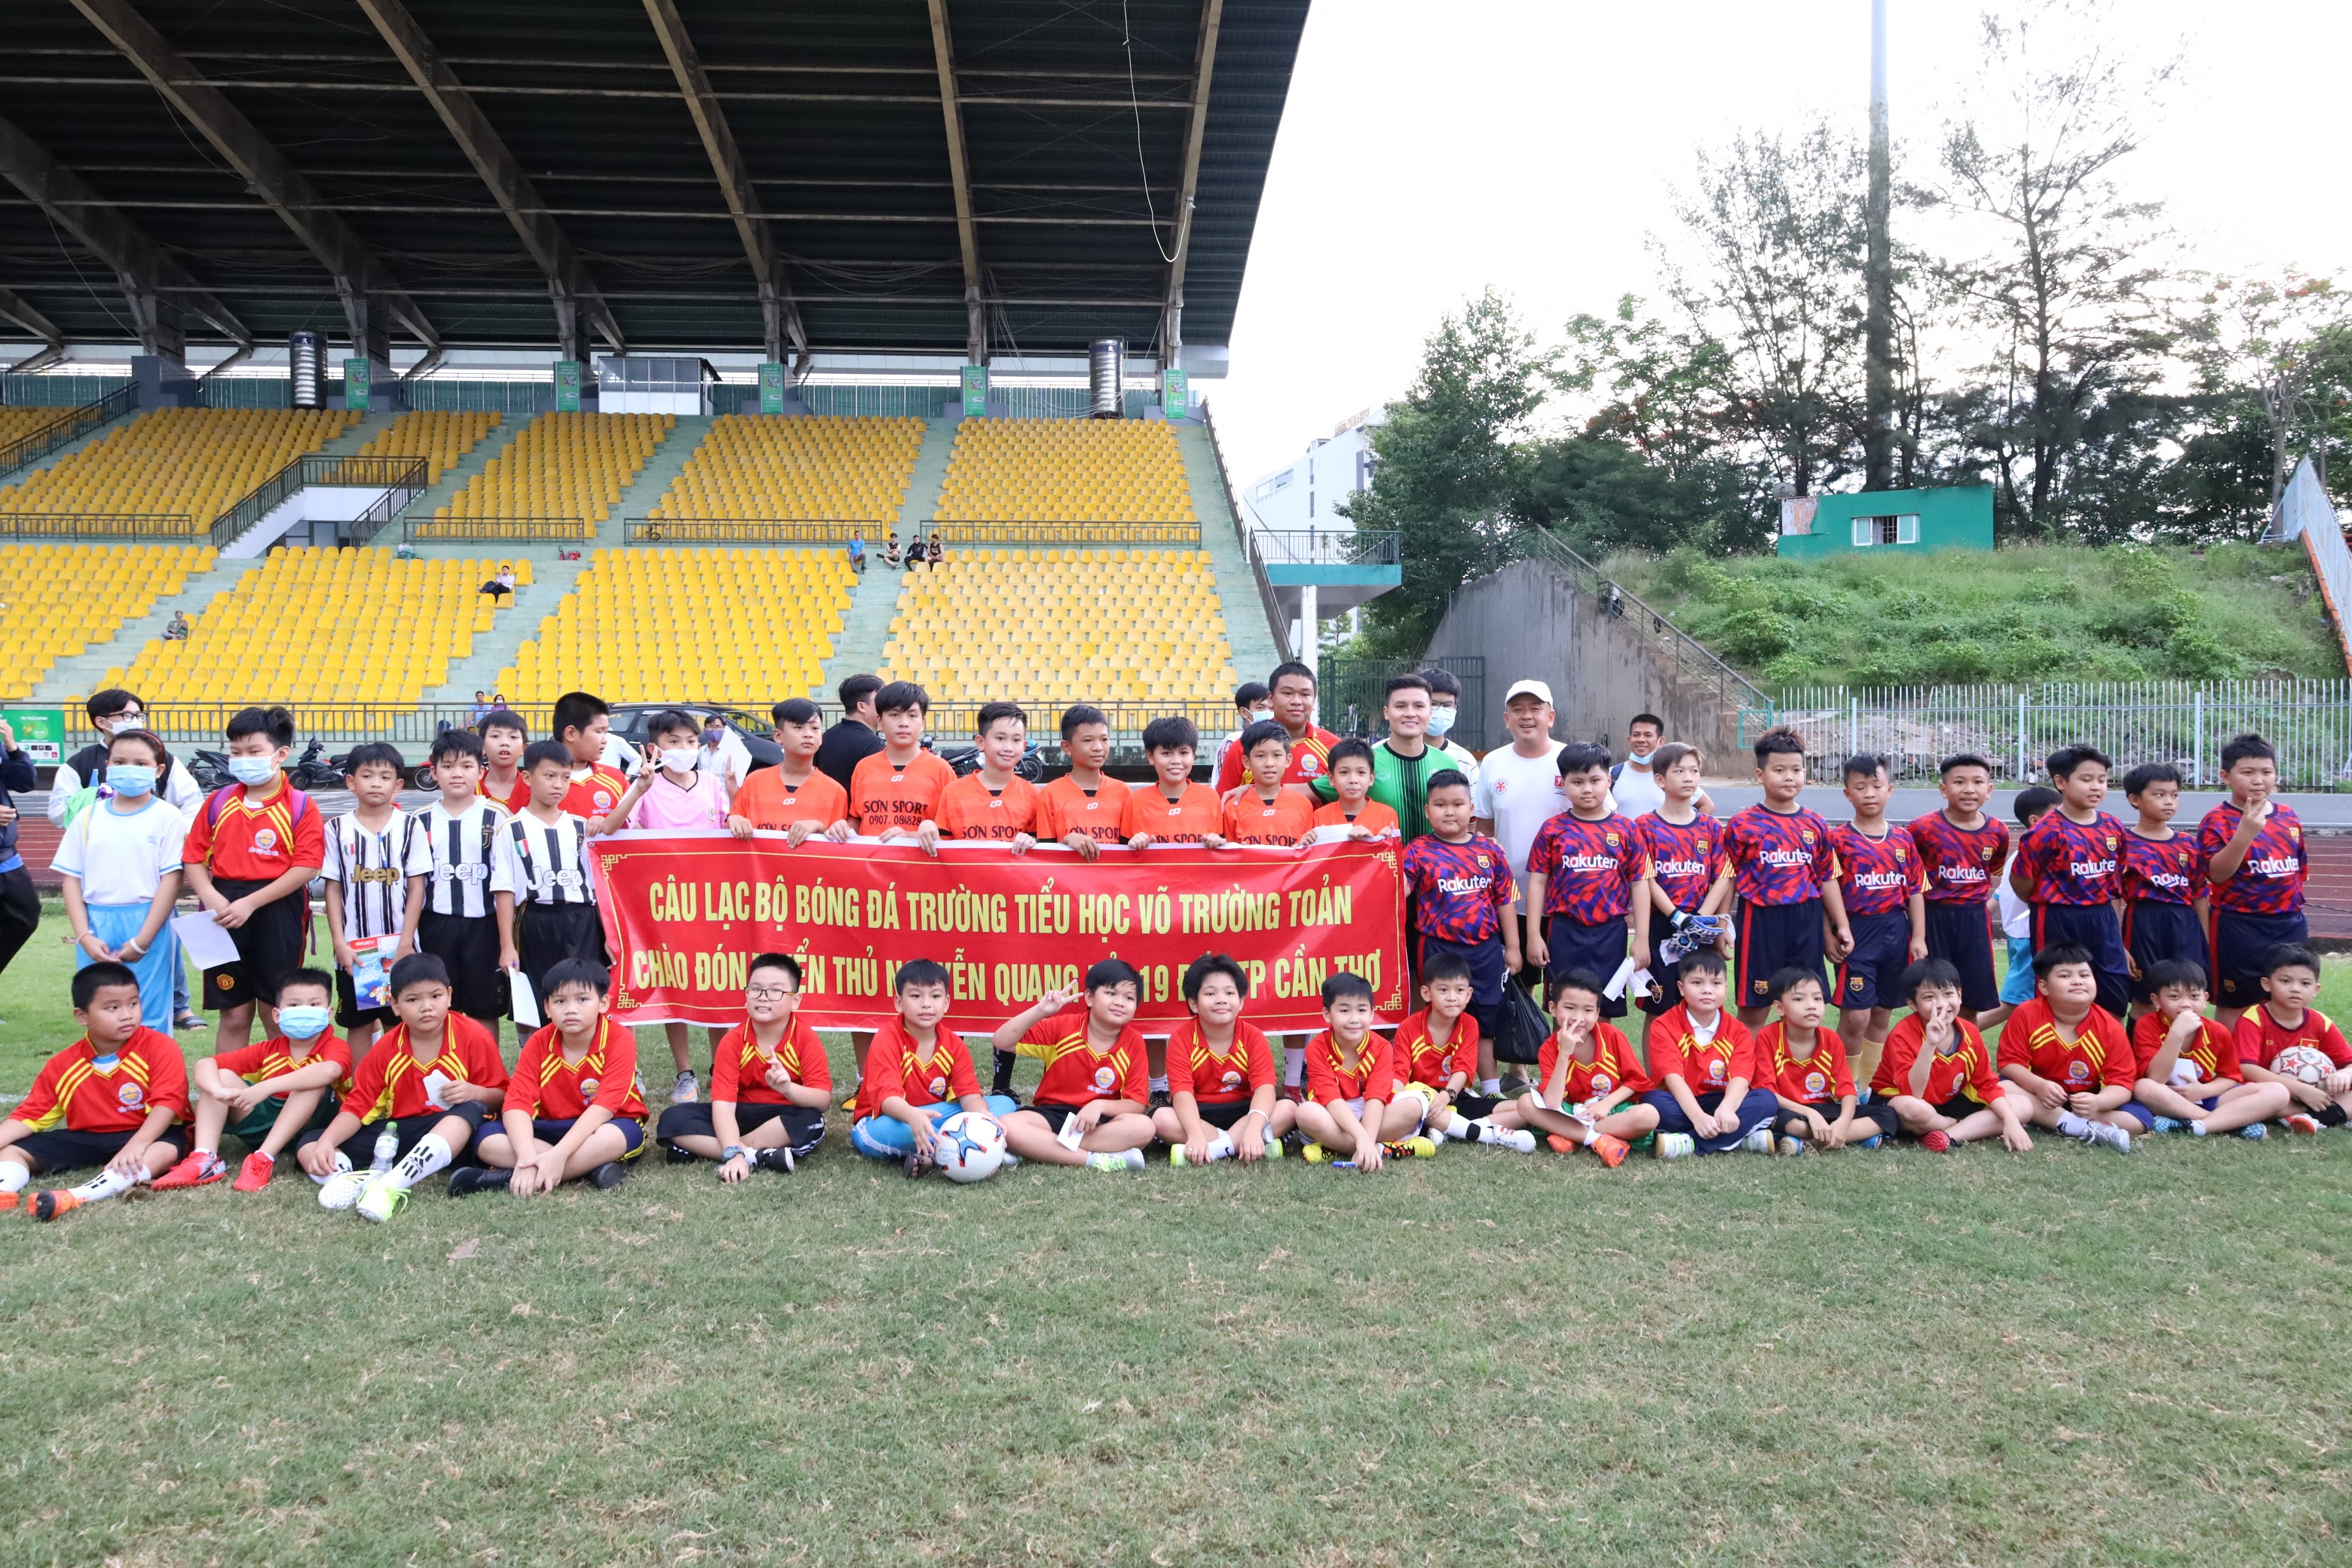 Các em học sinh hào hứng tham gia giao lưu, chơi bóng cùng tuyển thủ Nguyễn Quang Hải.